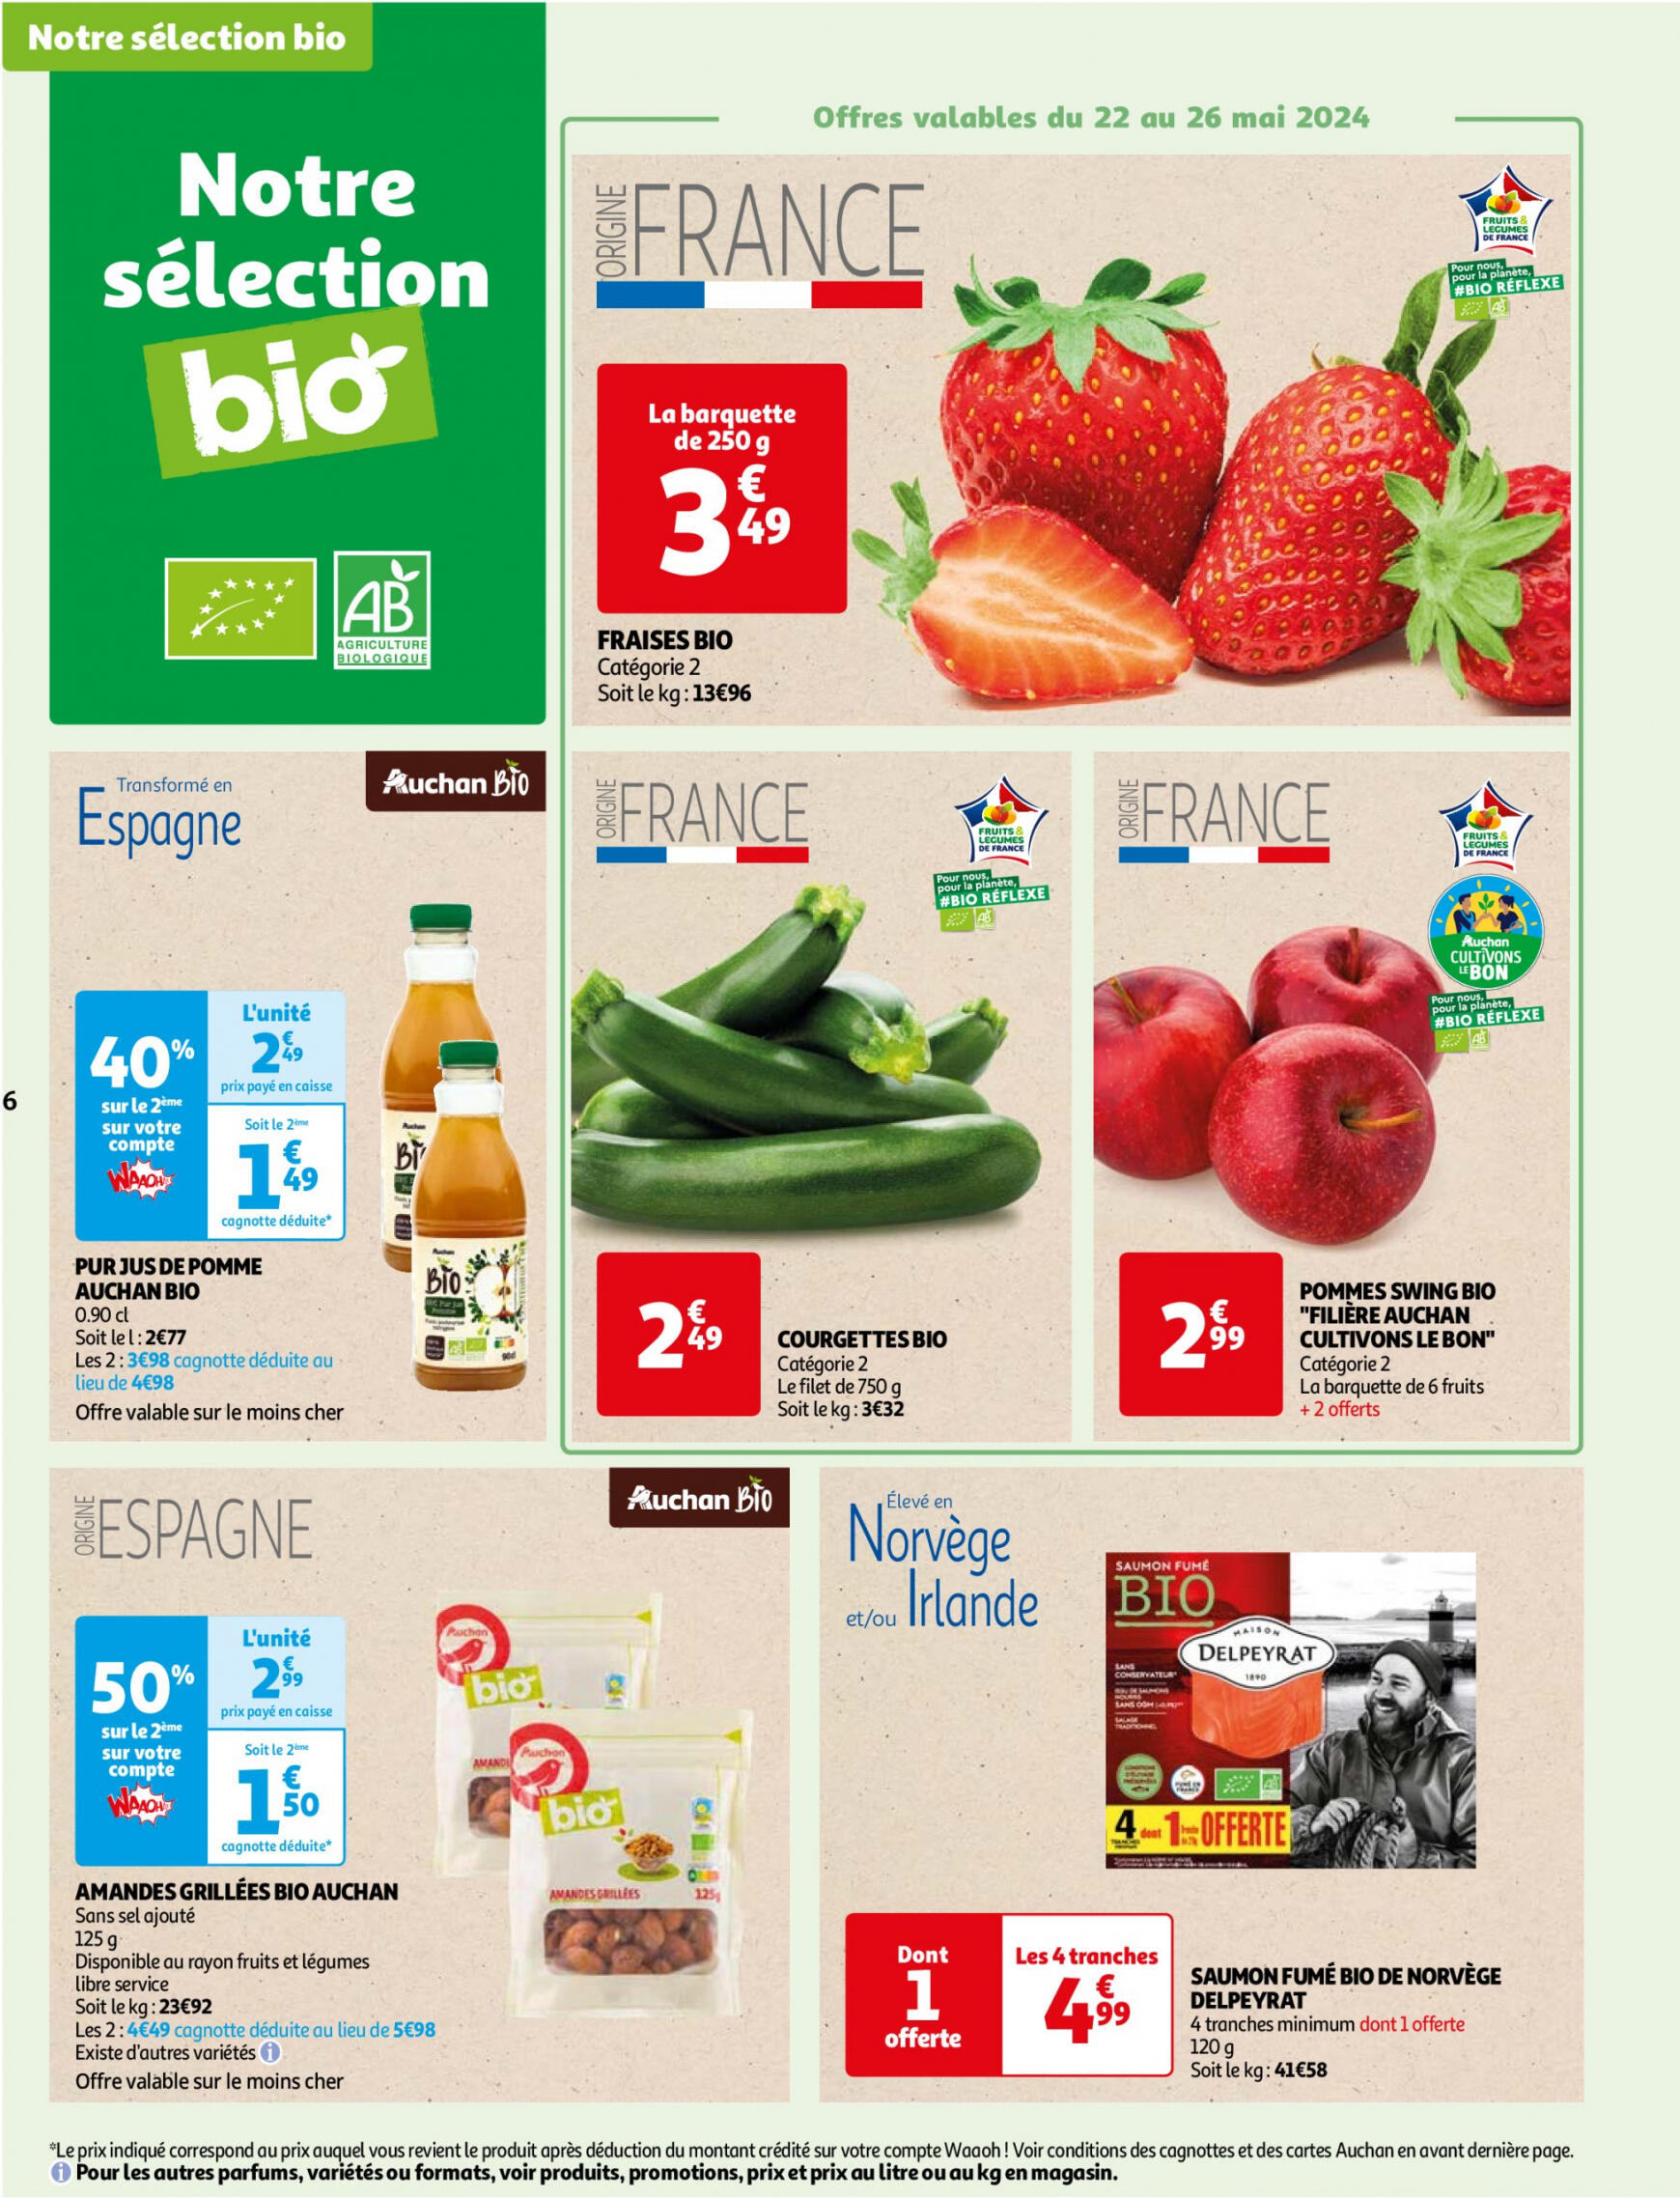 auchan - Auchan - Faites le plein de bio à prix bas folder huidig 22.05. - 03.06. - page: 6